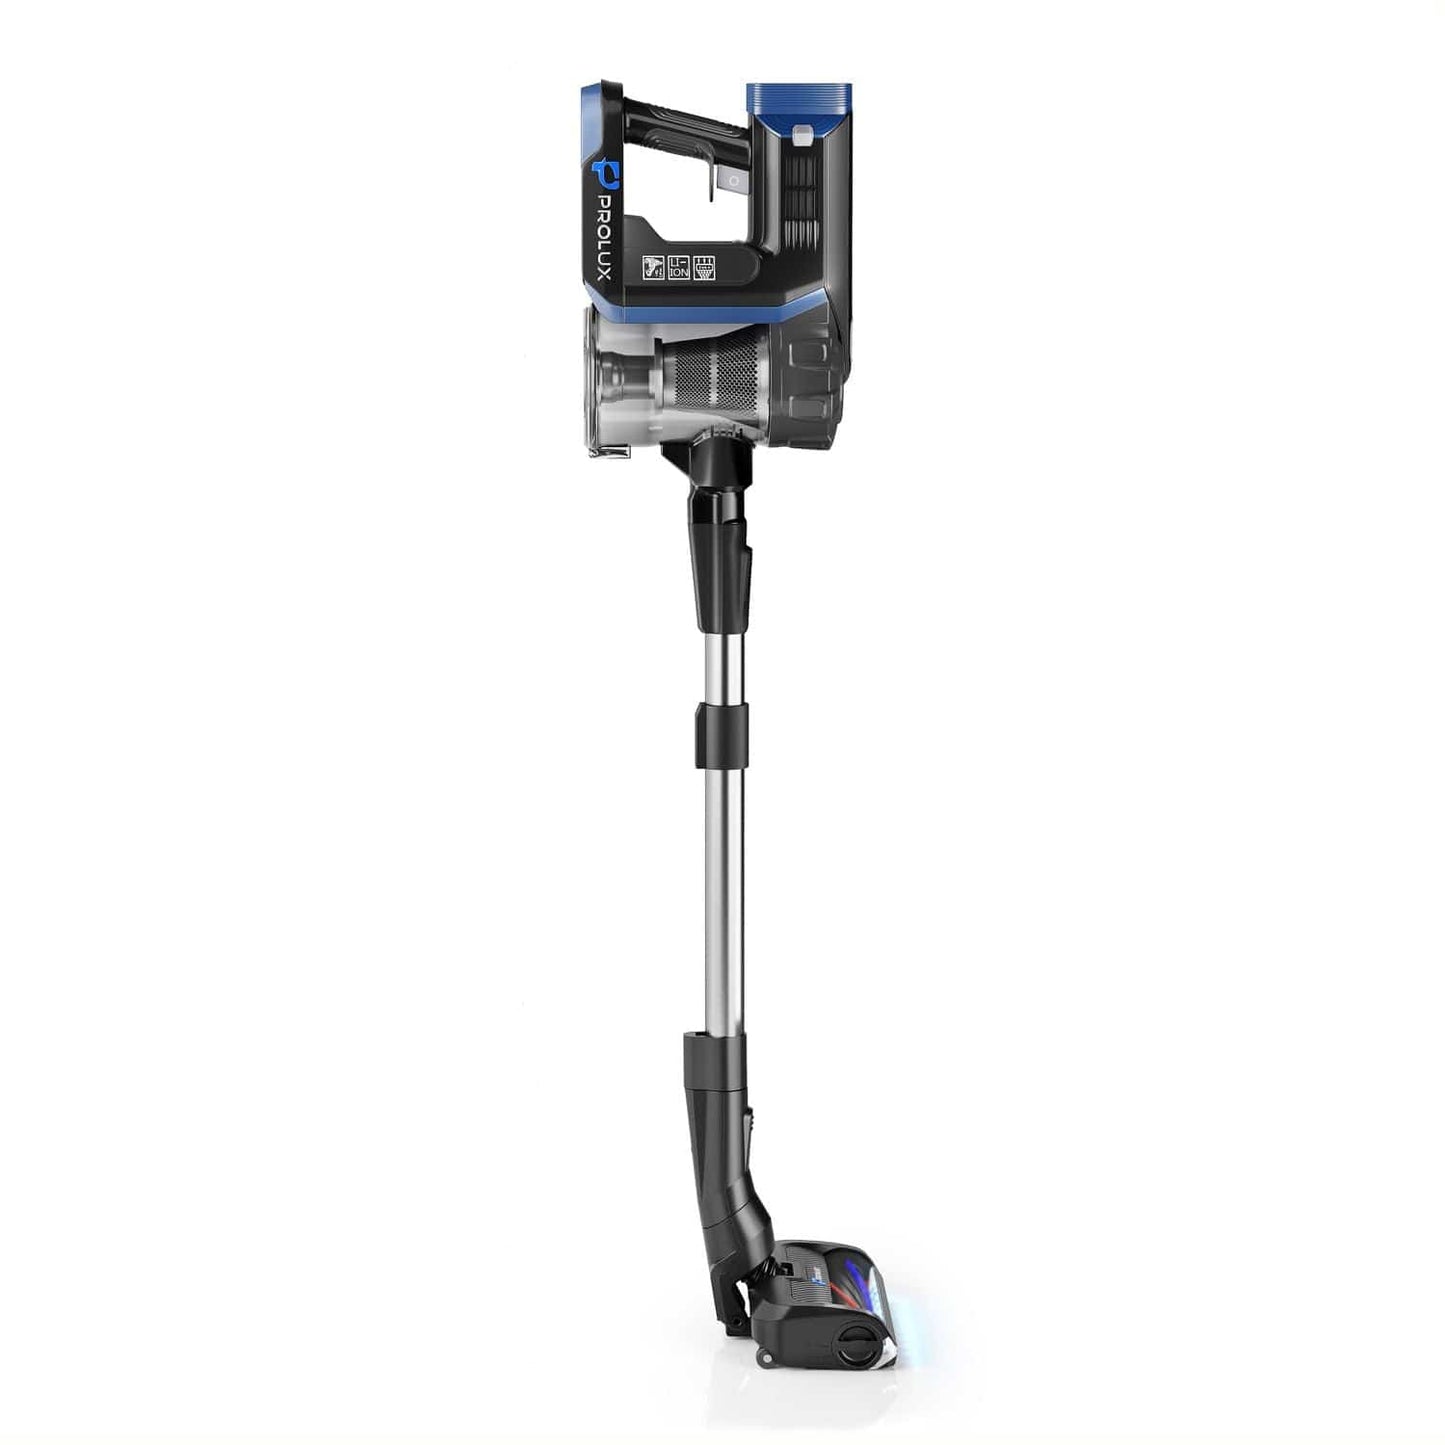 Prolux RS7 PET Cordless Handheld Stick Vacuum